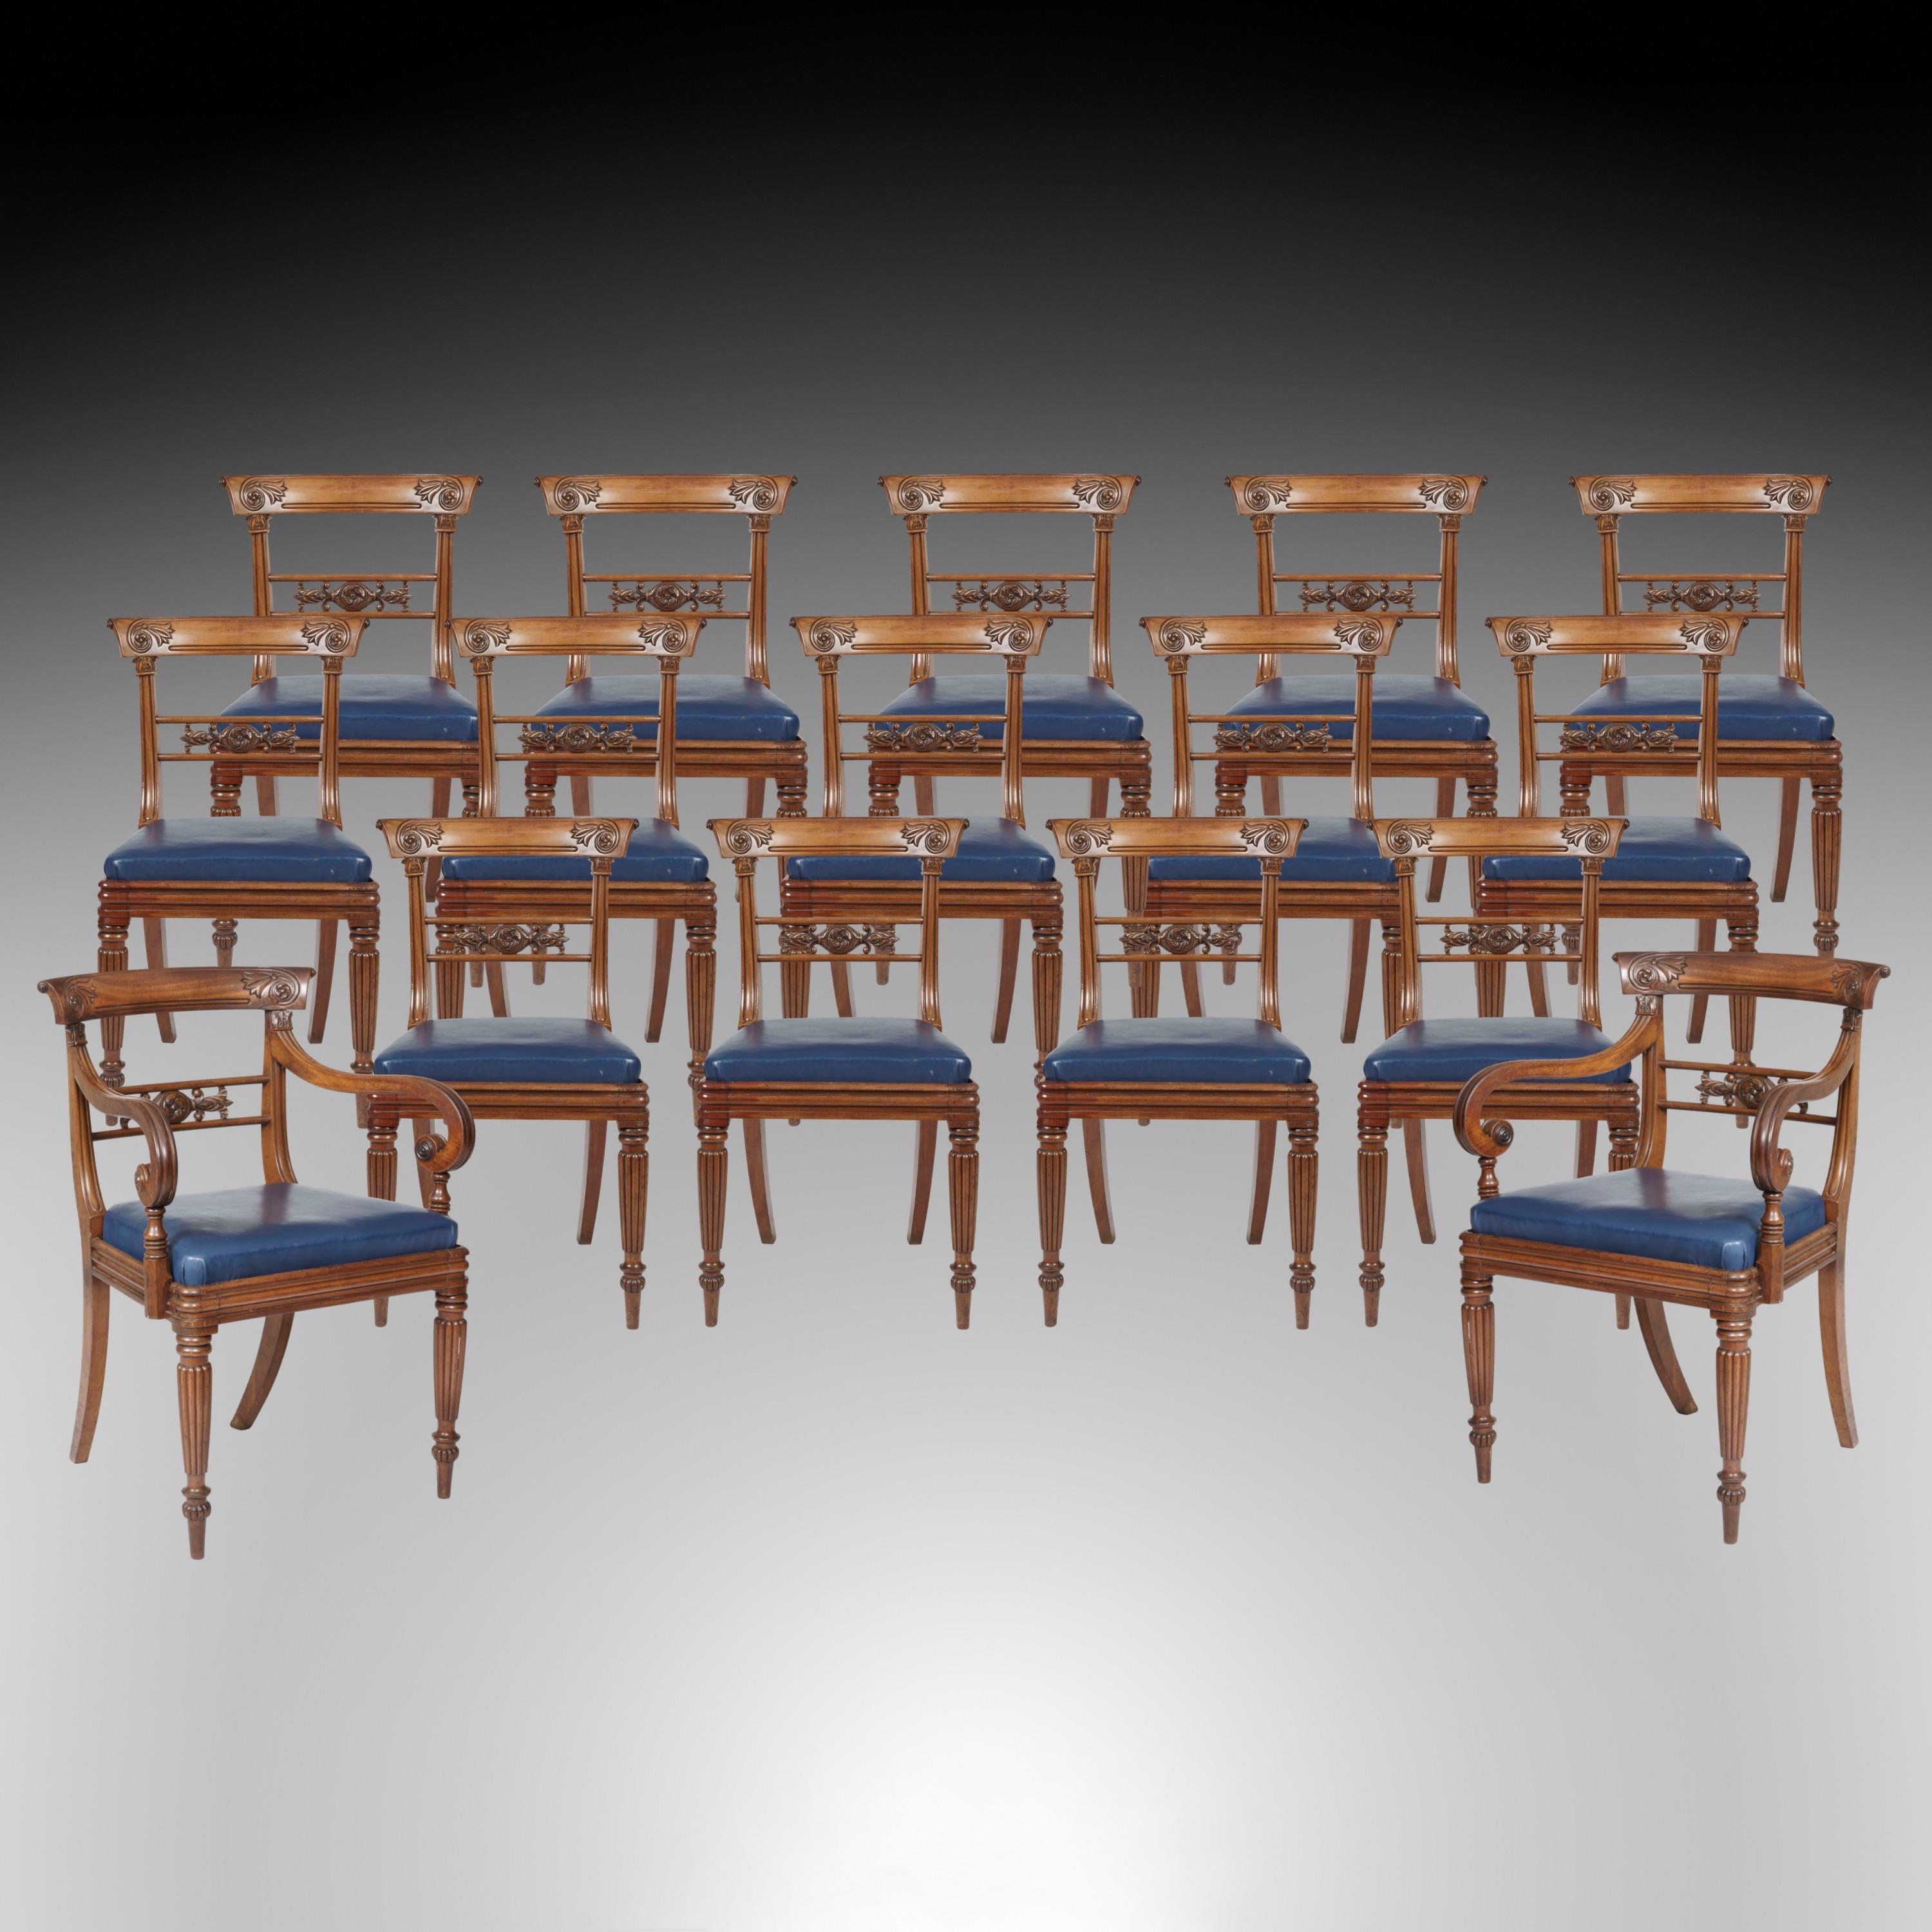 Ein Satz von sechzehn Esszimmerstühlen aus der Zeit Wilhelms IV.

Aus Mahagoni gefertigt, bestehend aus vierzehn Beistellstühlen und einem Paar Schnitzersesseln. Auf ringförmig gedrehten, spitz zulaufenden und gelappten Vorderfüßen stehend, mit